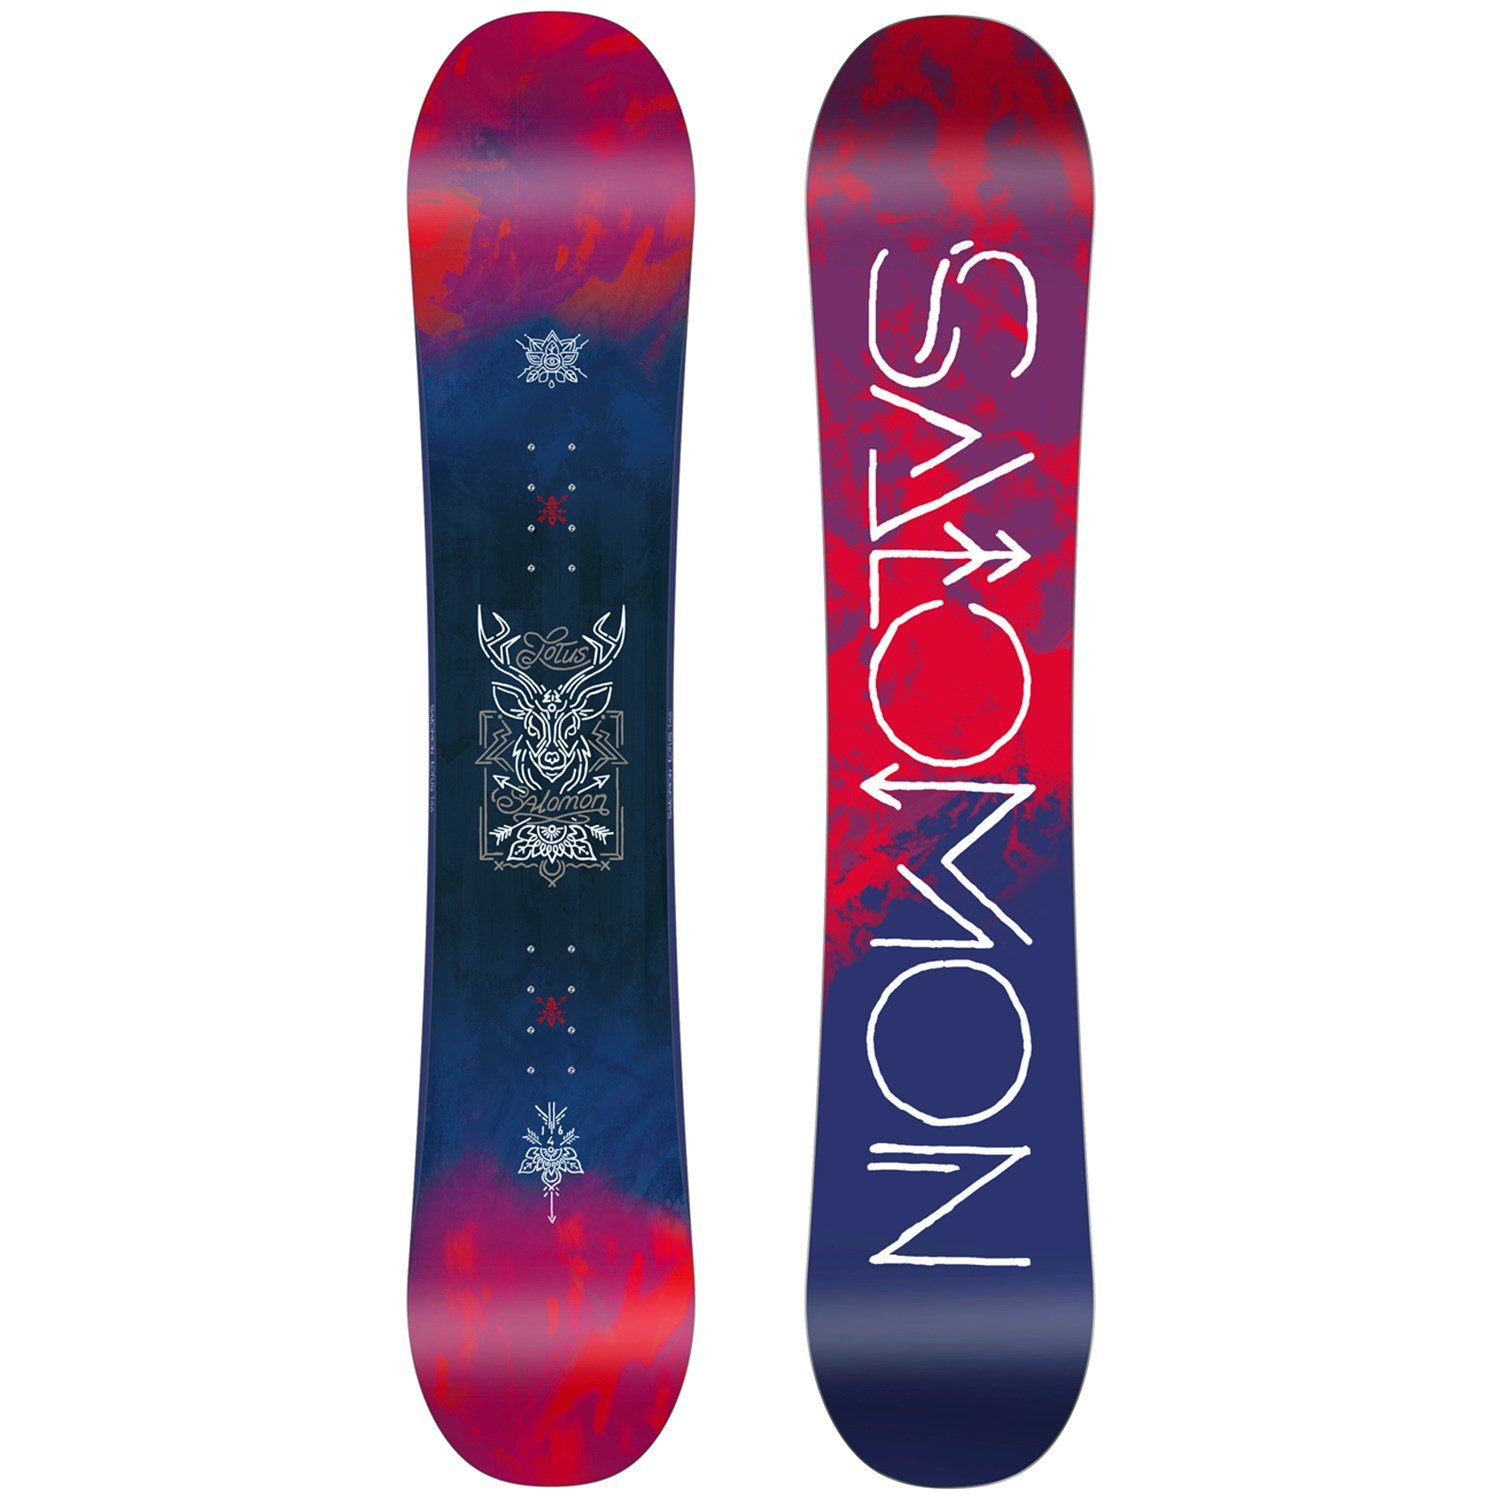 salomon ski equipment